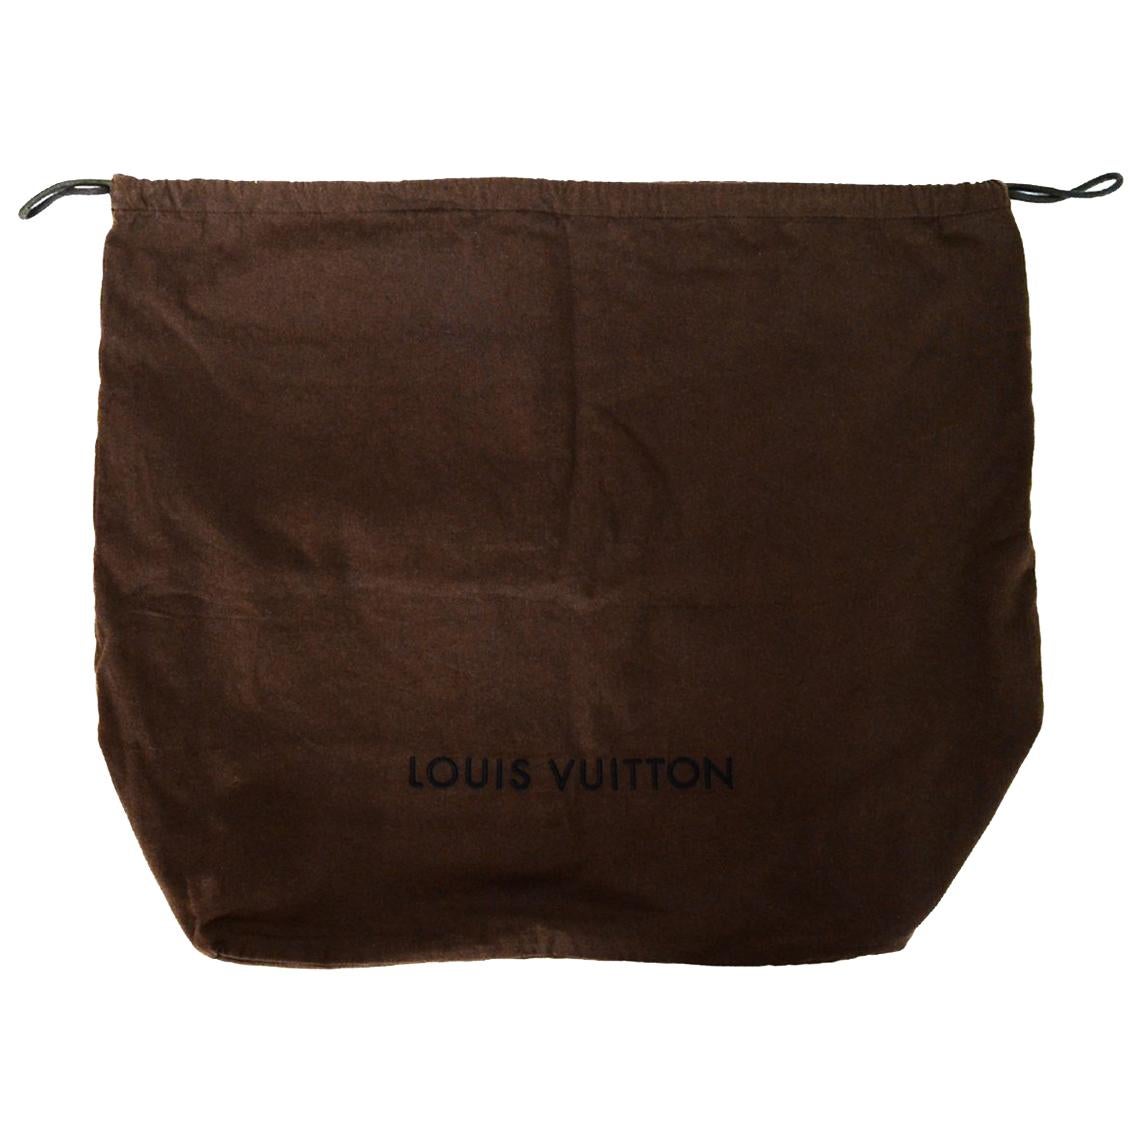 Louis Vuitton, Bags, Auth Louis Vuitton Large Dust Bag Old Style